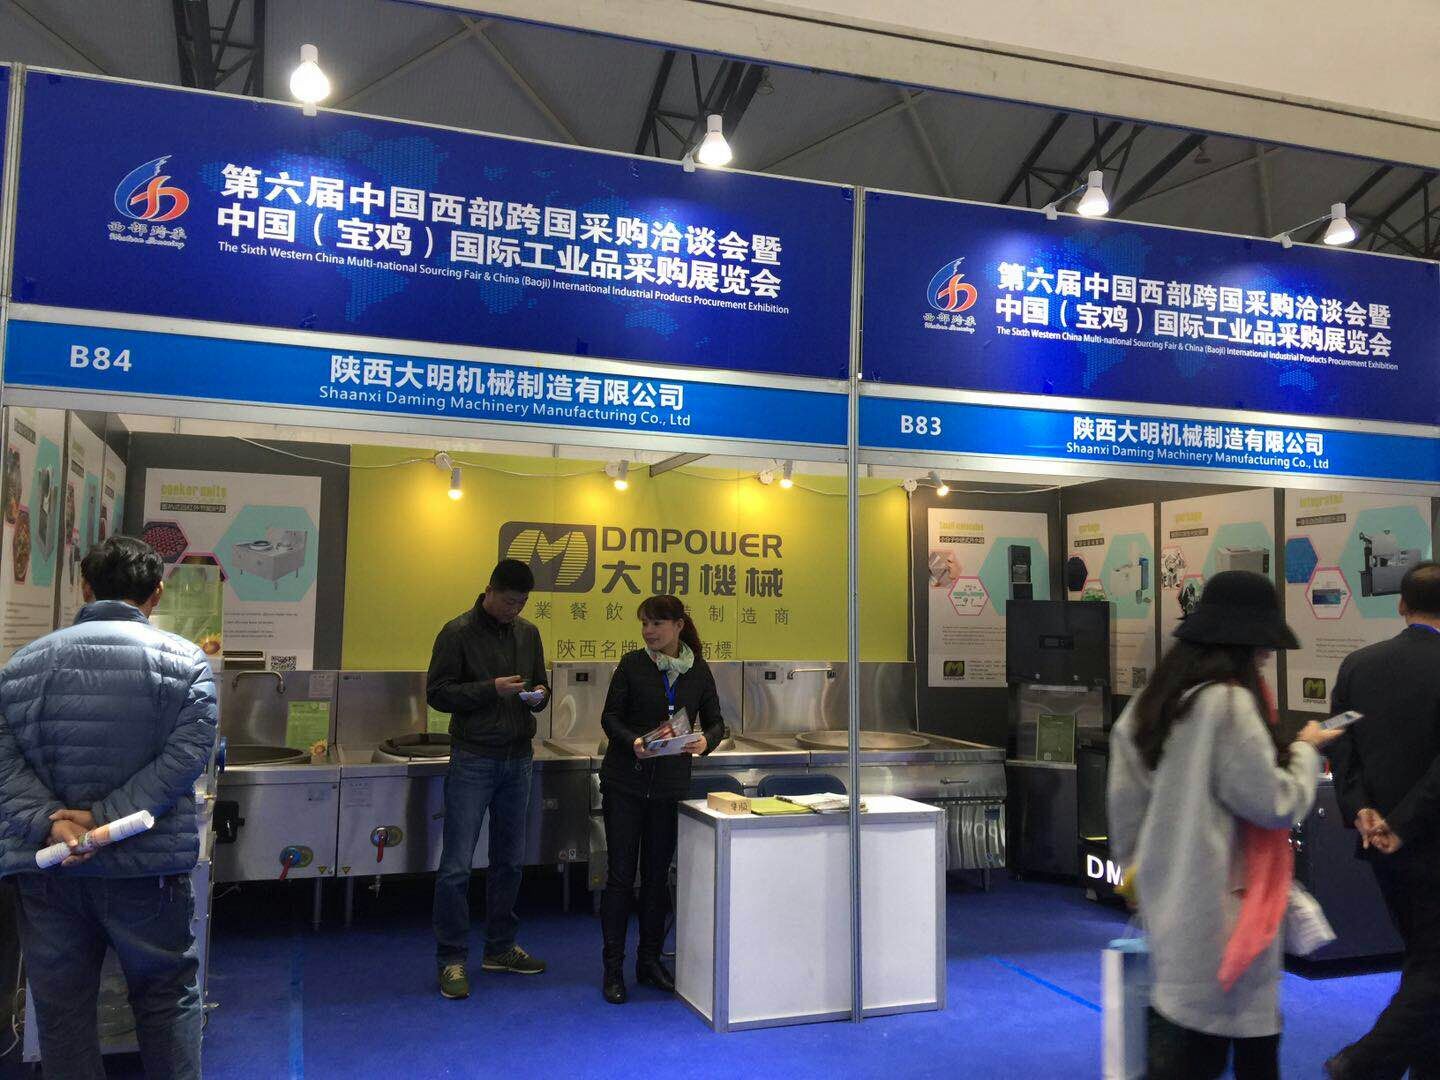 大明厨房设备亮相第六届中国西部跨国采购洽谈会